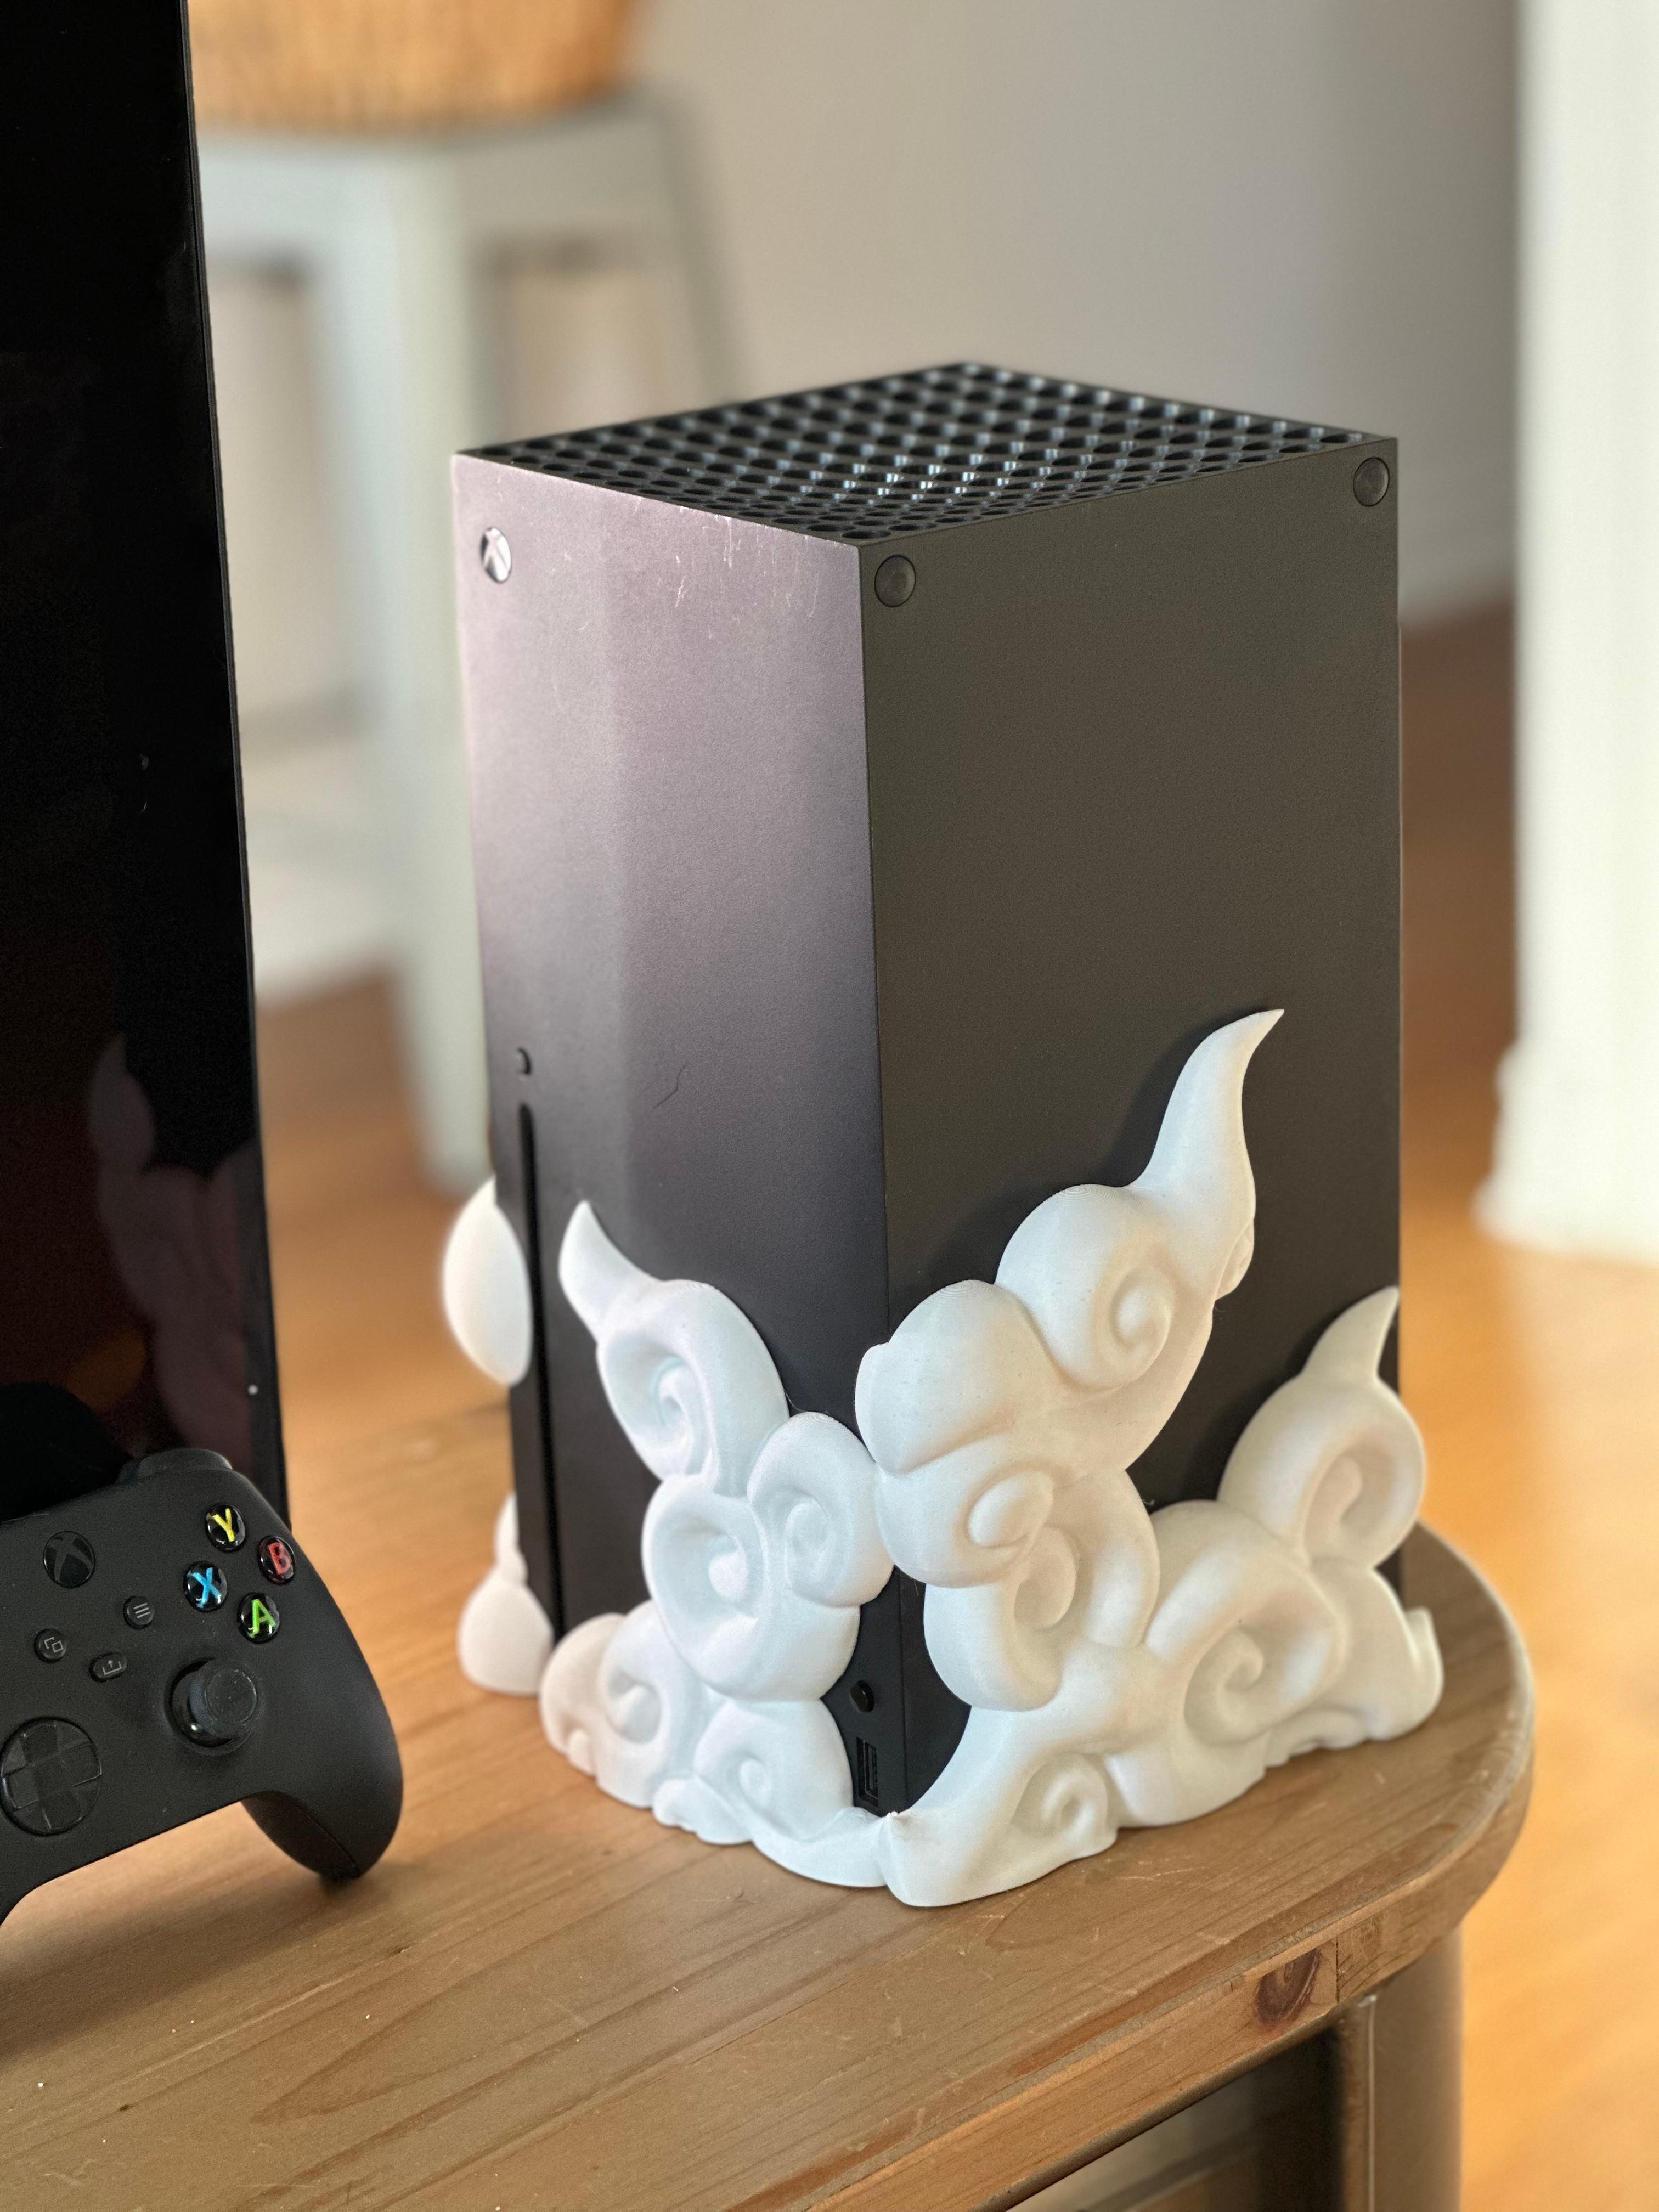 XBOX SERIES X CONTROLLER - XBOX BUTTON 3D model 3D printable